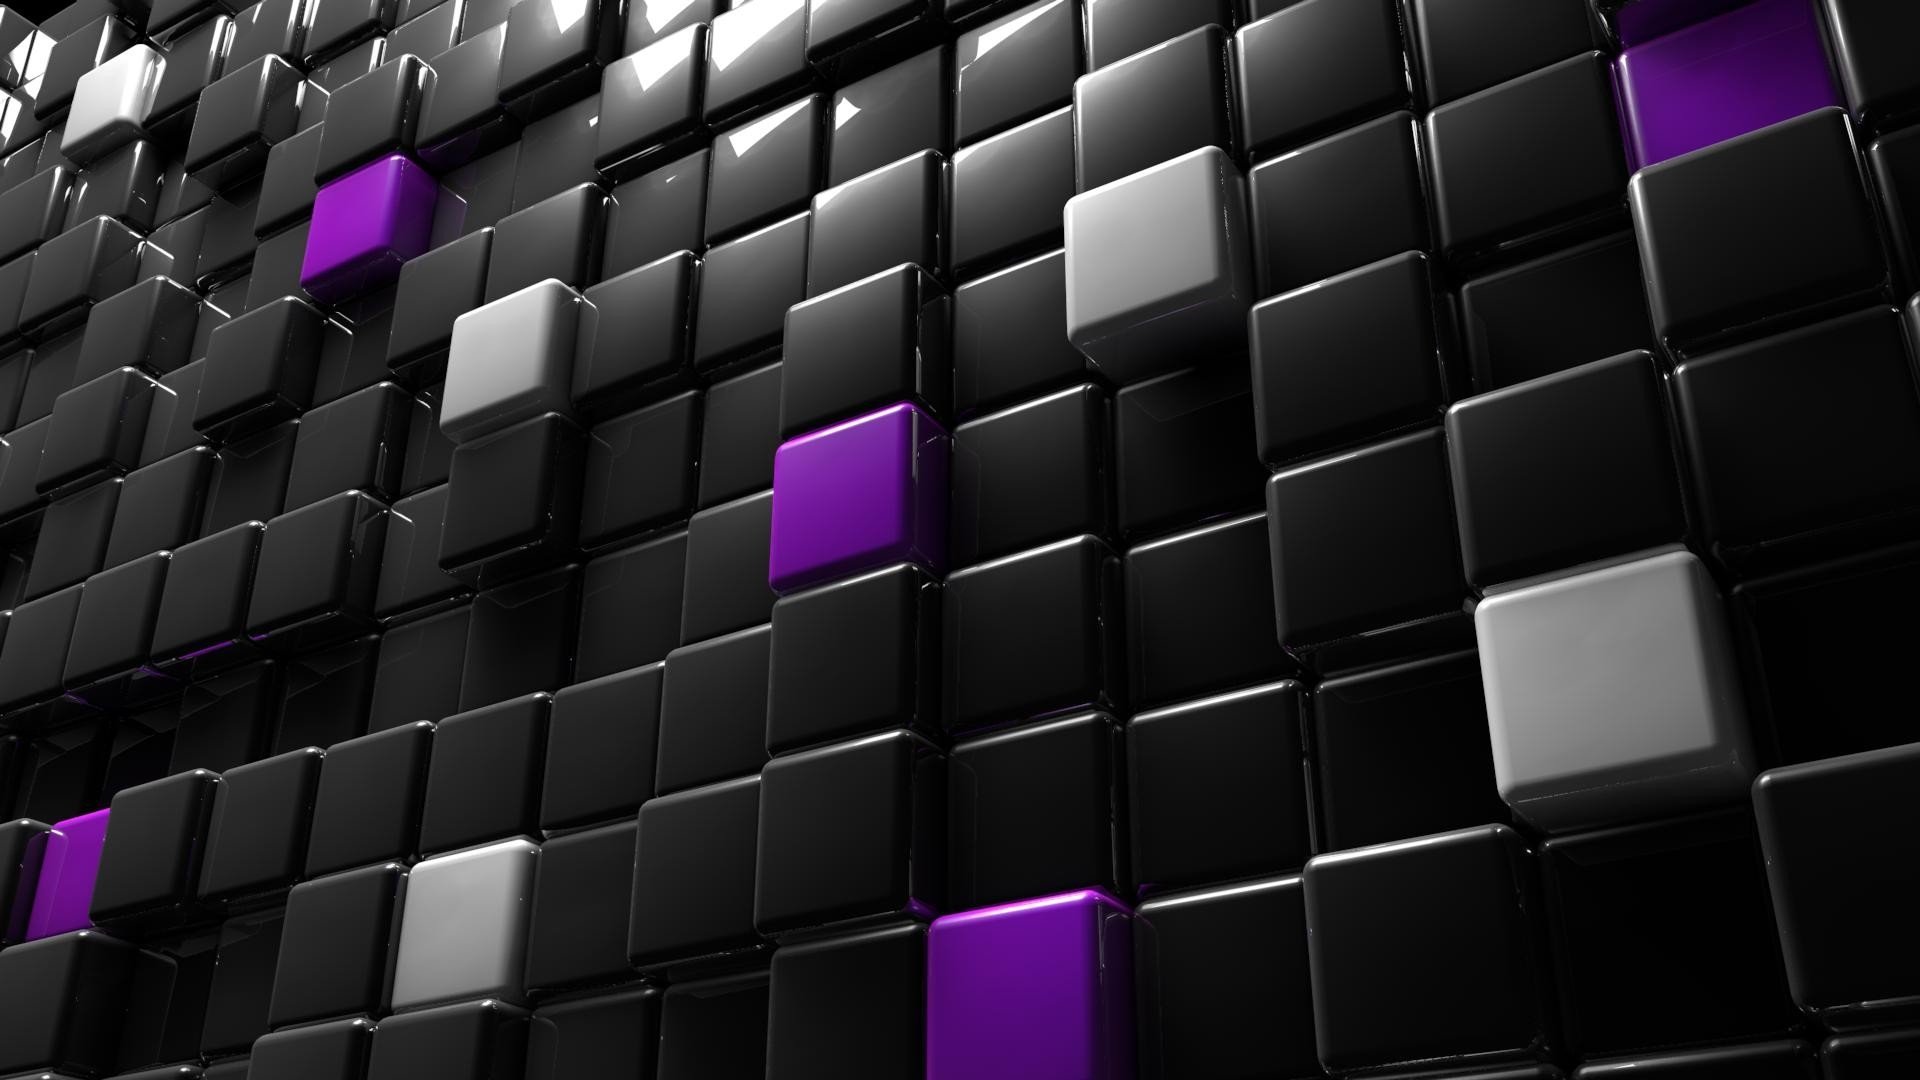 cube wallpaper,violet,purple,black,light,architecture